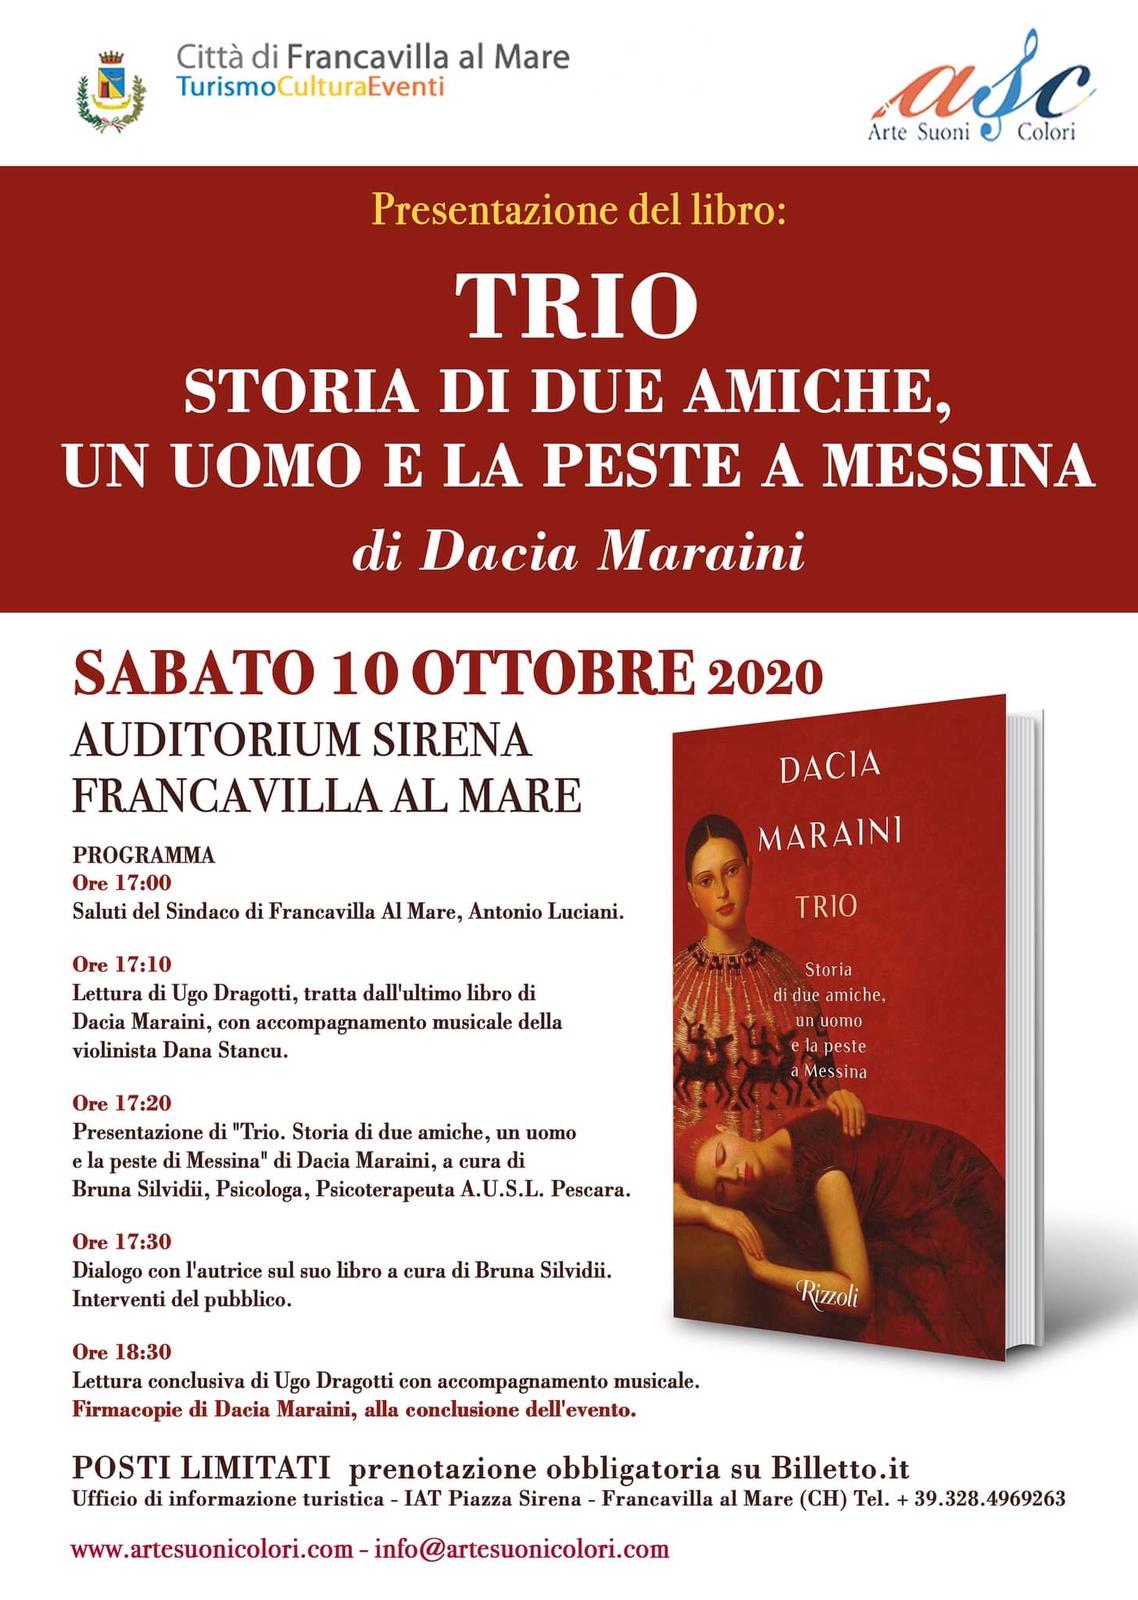 Vi aspettiamo alla presentazione di "Trio", il nuovo libro di Dacia Maraini!